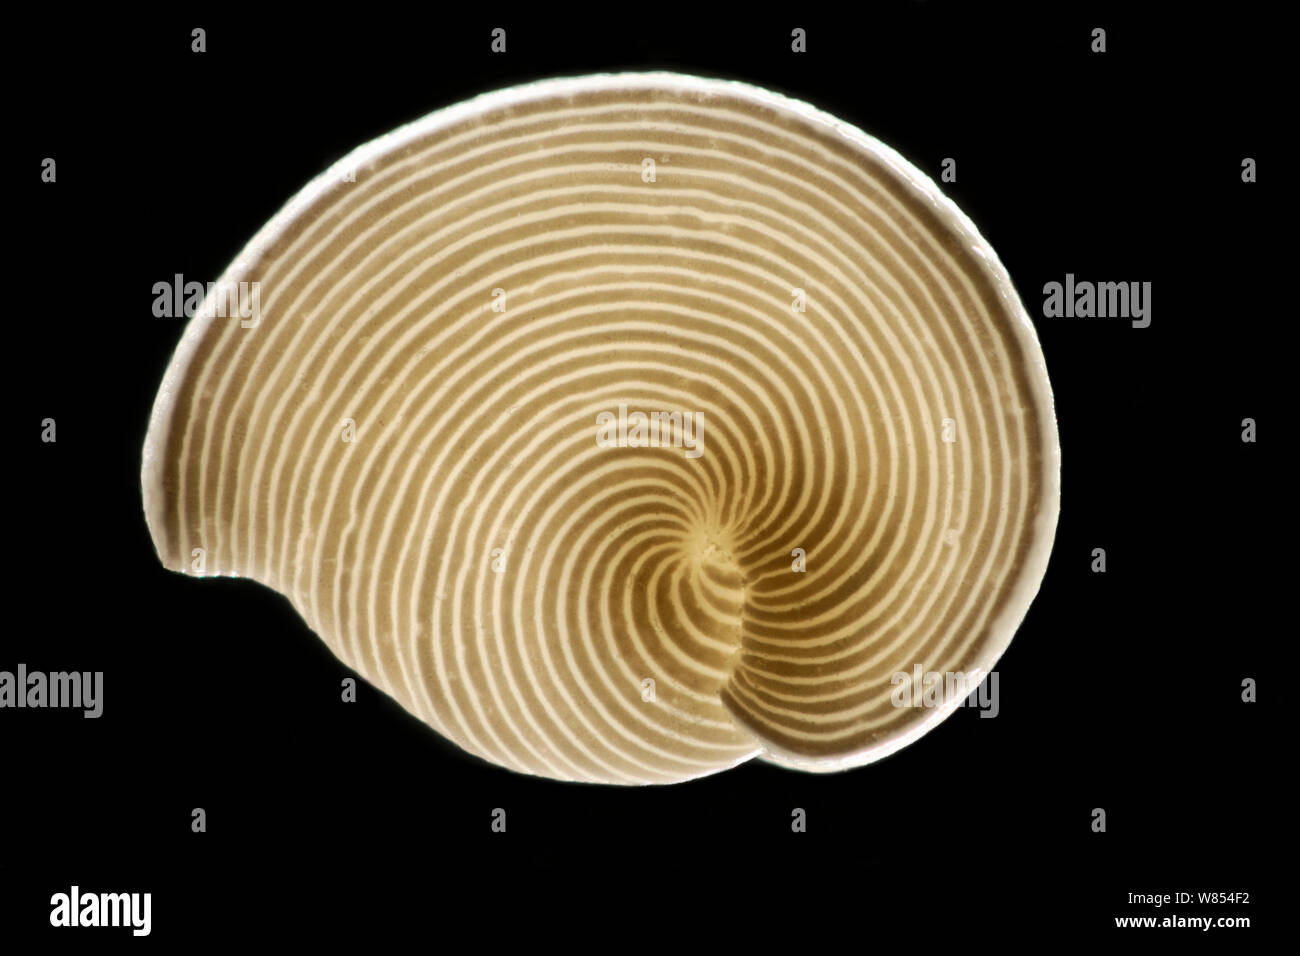 Des foraminifères (Archaias angulatus) de la sable calcaire des Bahamas, Etats-Unis. L'arrangement des chambres intérieures est évident à partir de la bande. Cet organisme unicellulaire est commun à la sous-marines des Bahamas Banques. Diagonale d'environ 2 mm du châssis focus numérique droit d'empilage Banque D'Images